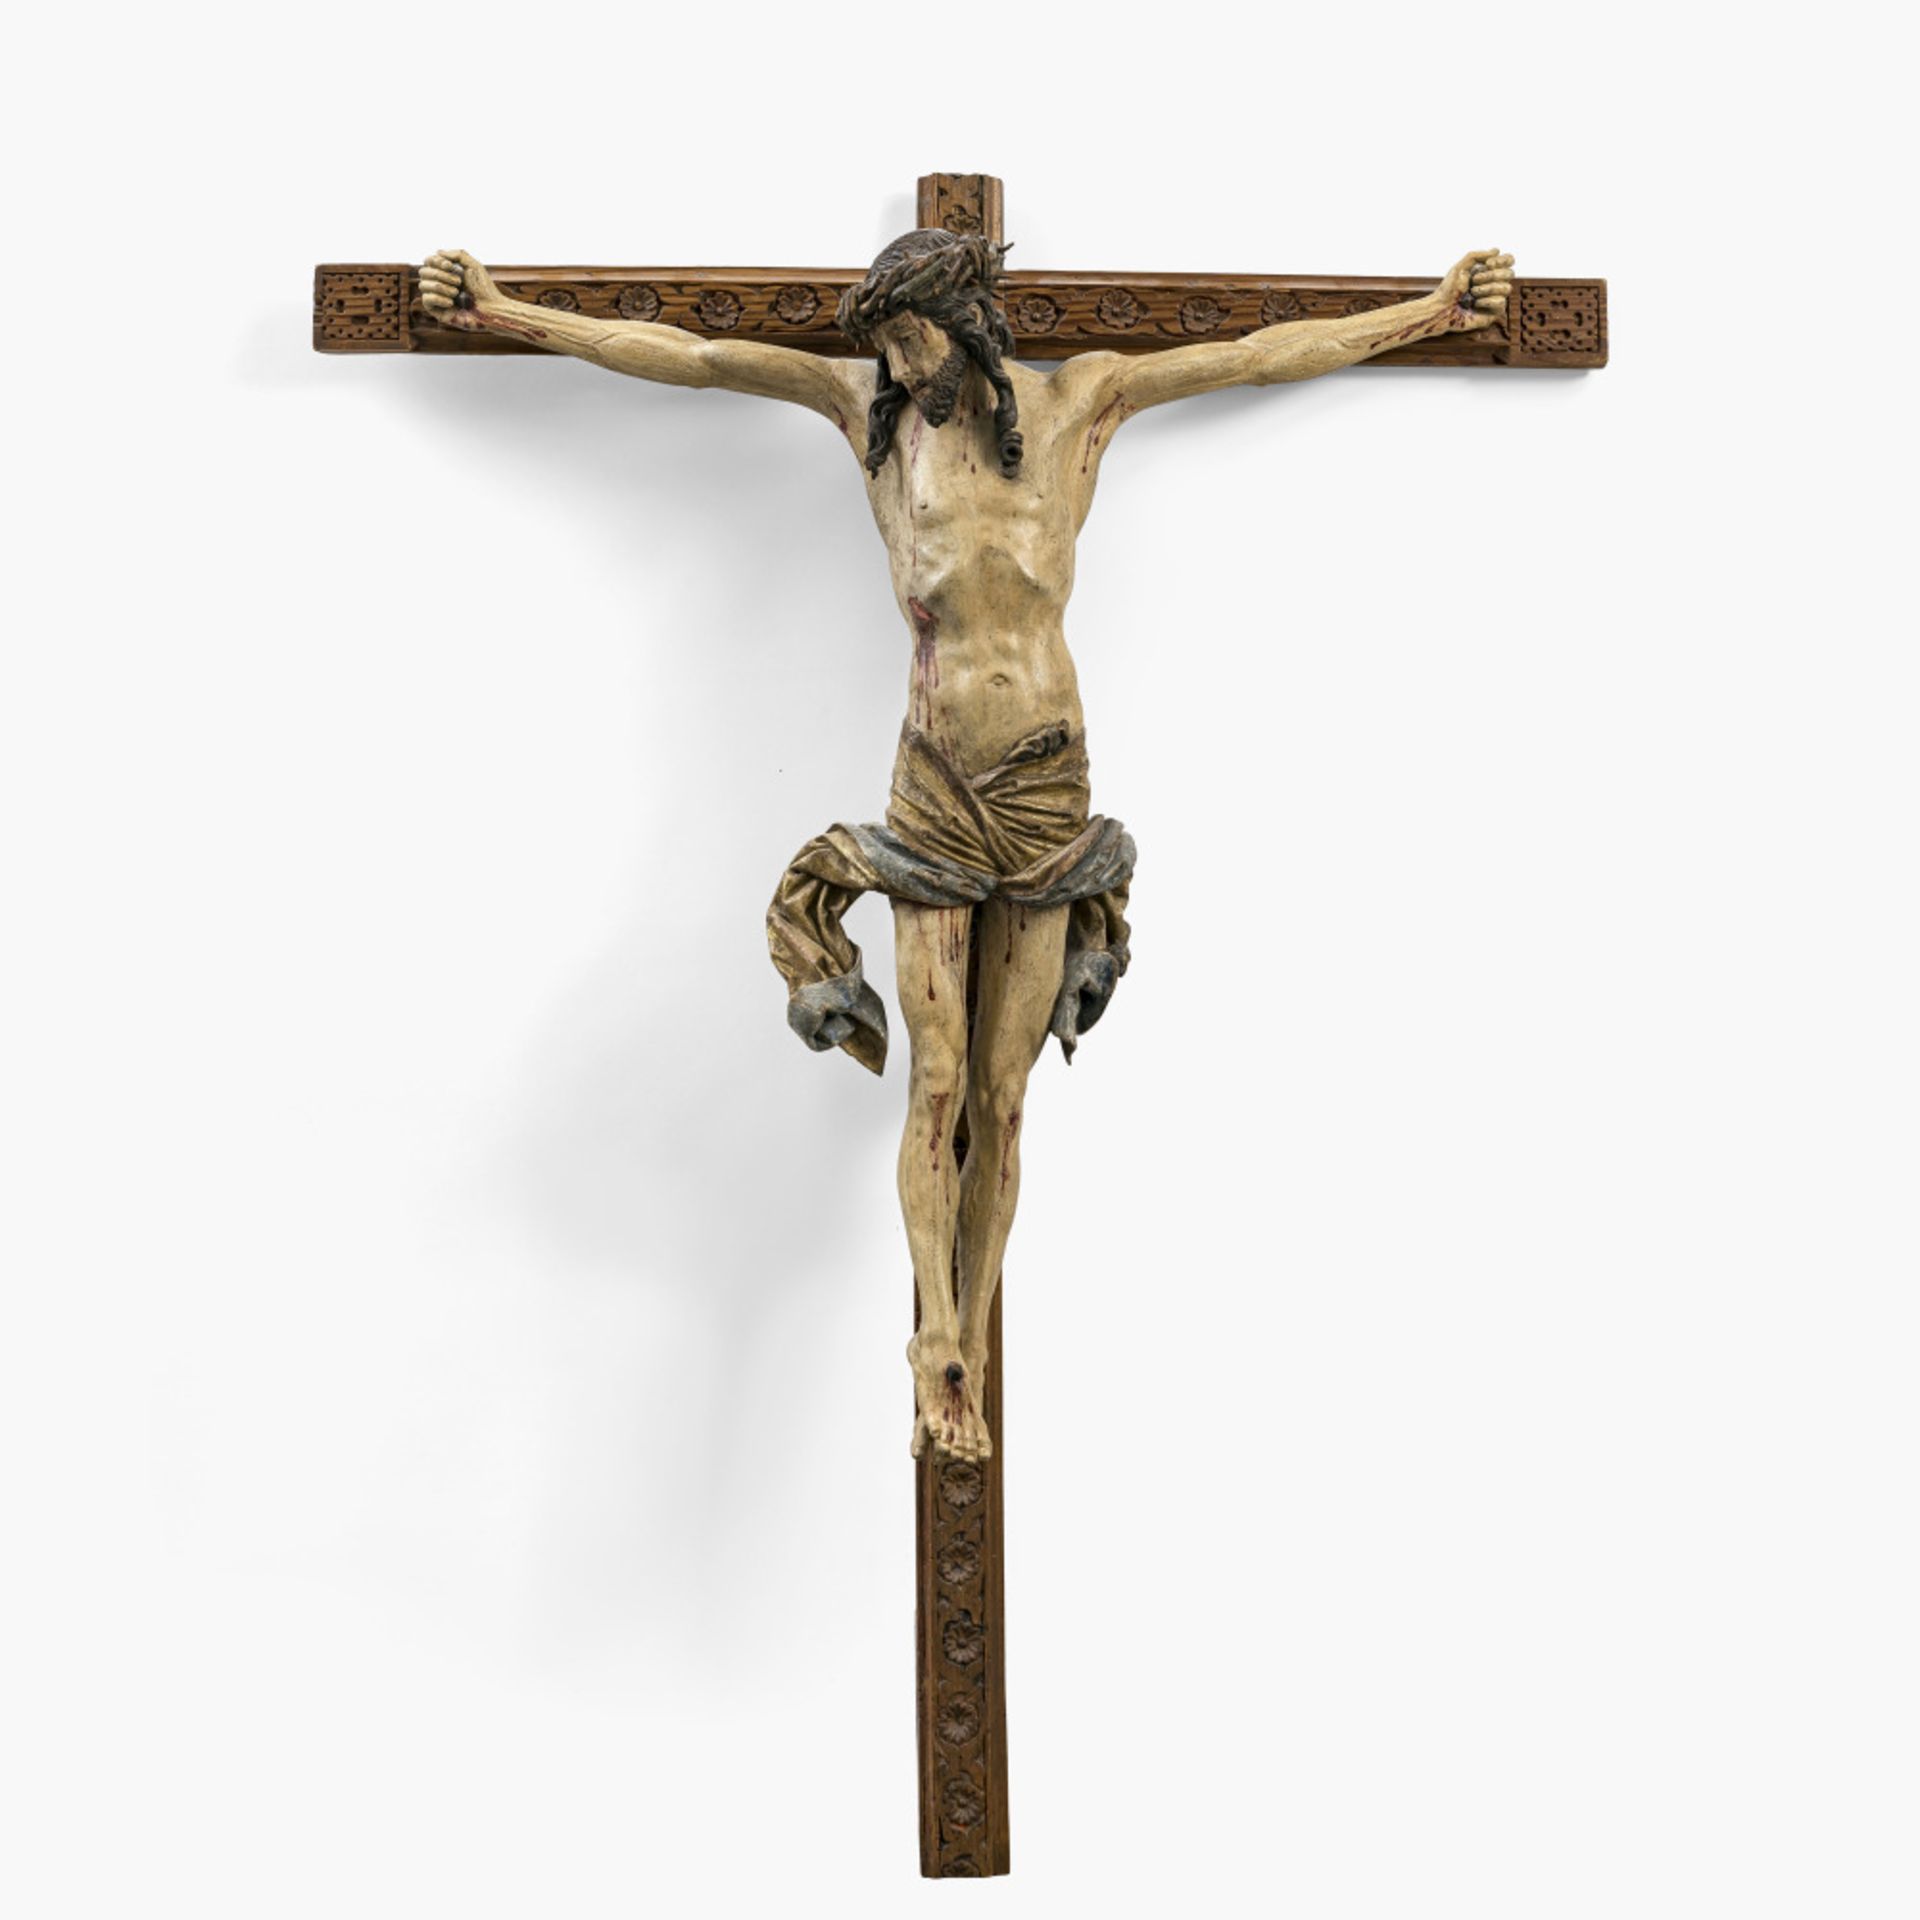 Kruzifix - Riemenschneider, Tilman (um 1460 Heiligenstadt - 1531 Würzburg), Umkreis, um 1520